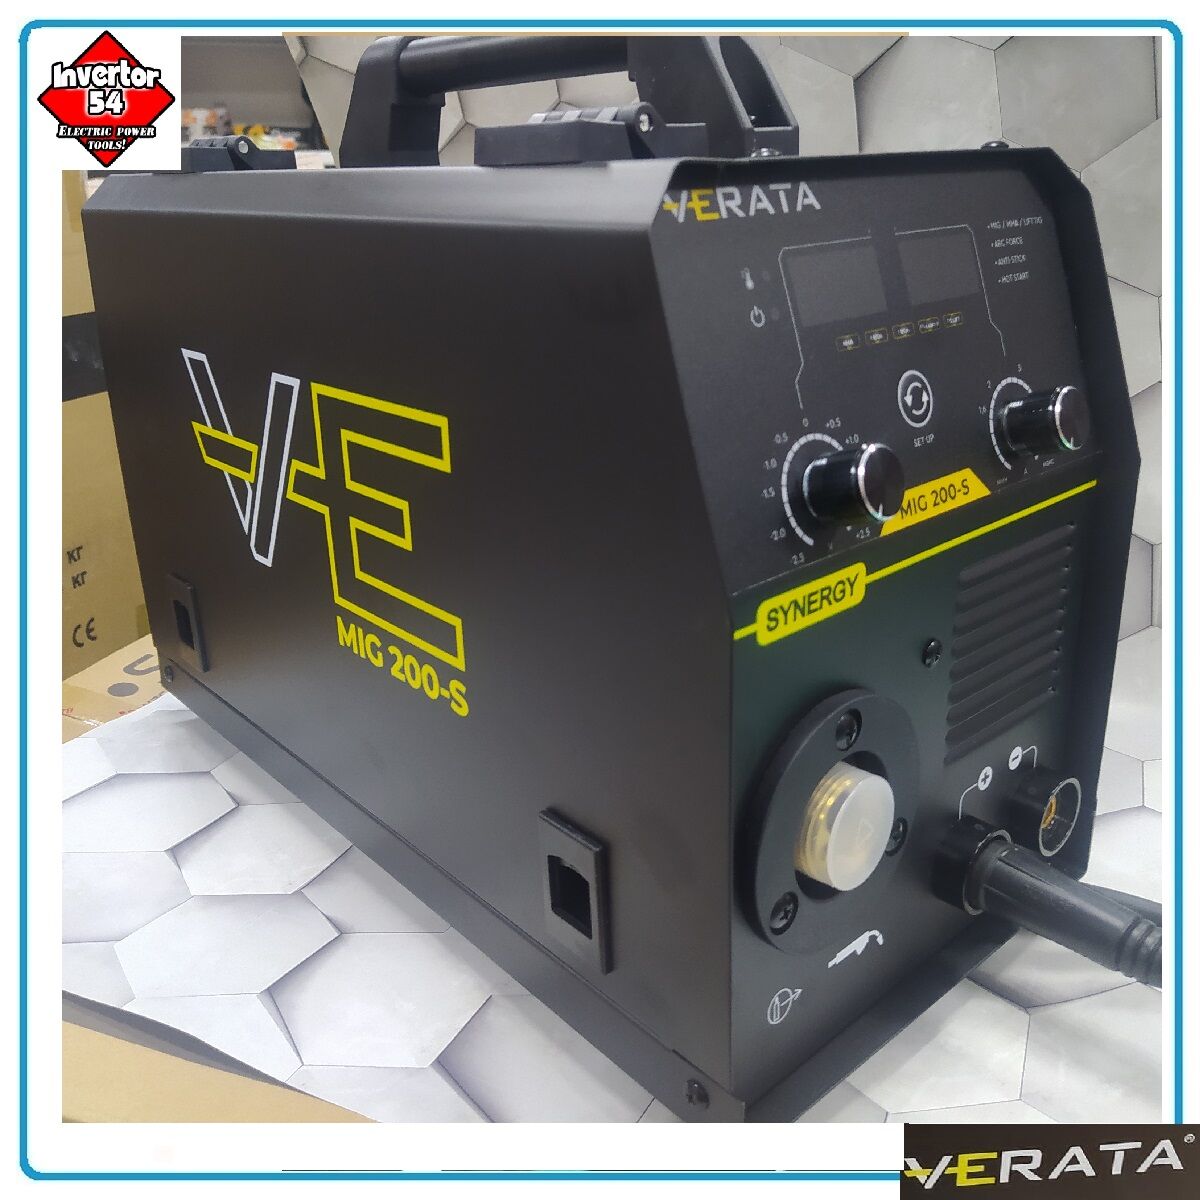 Сварочный полуавтомат инверторный Verata Mig 200-S